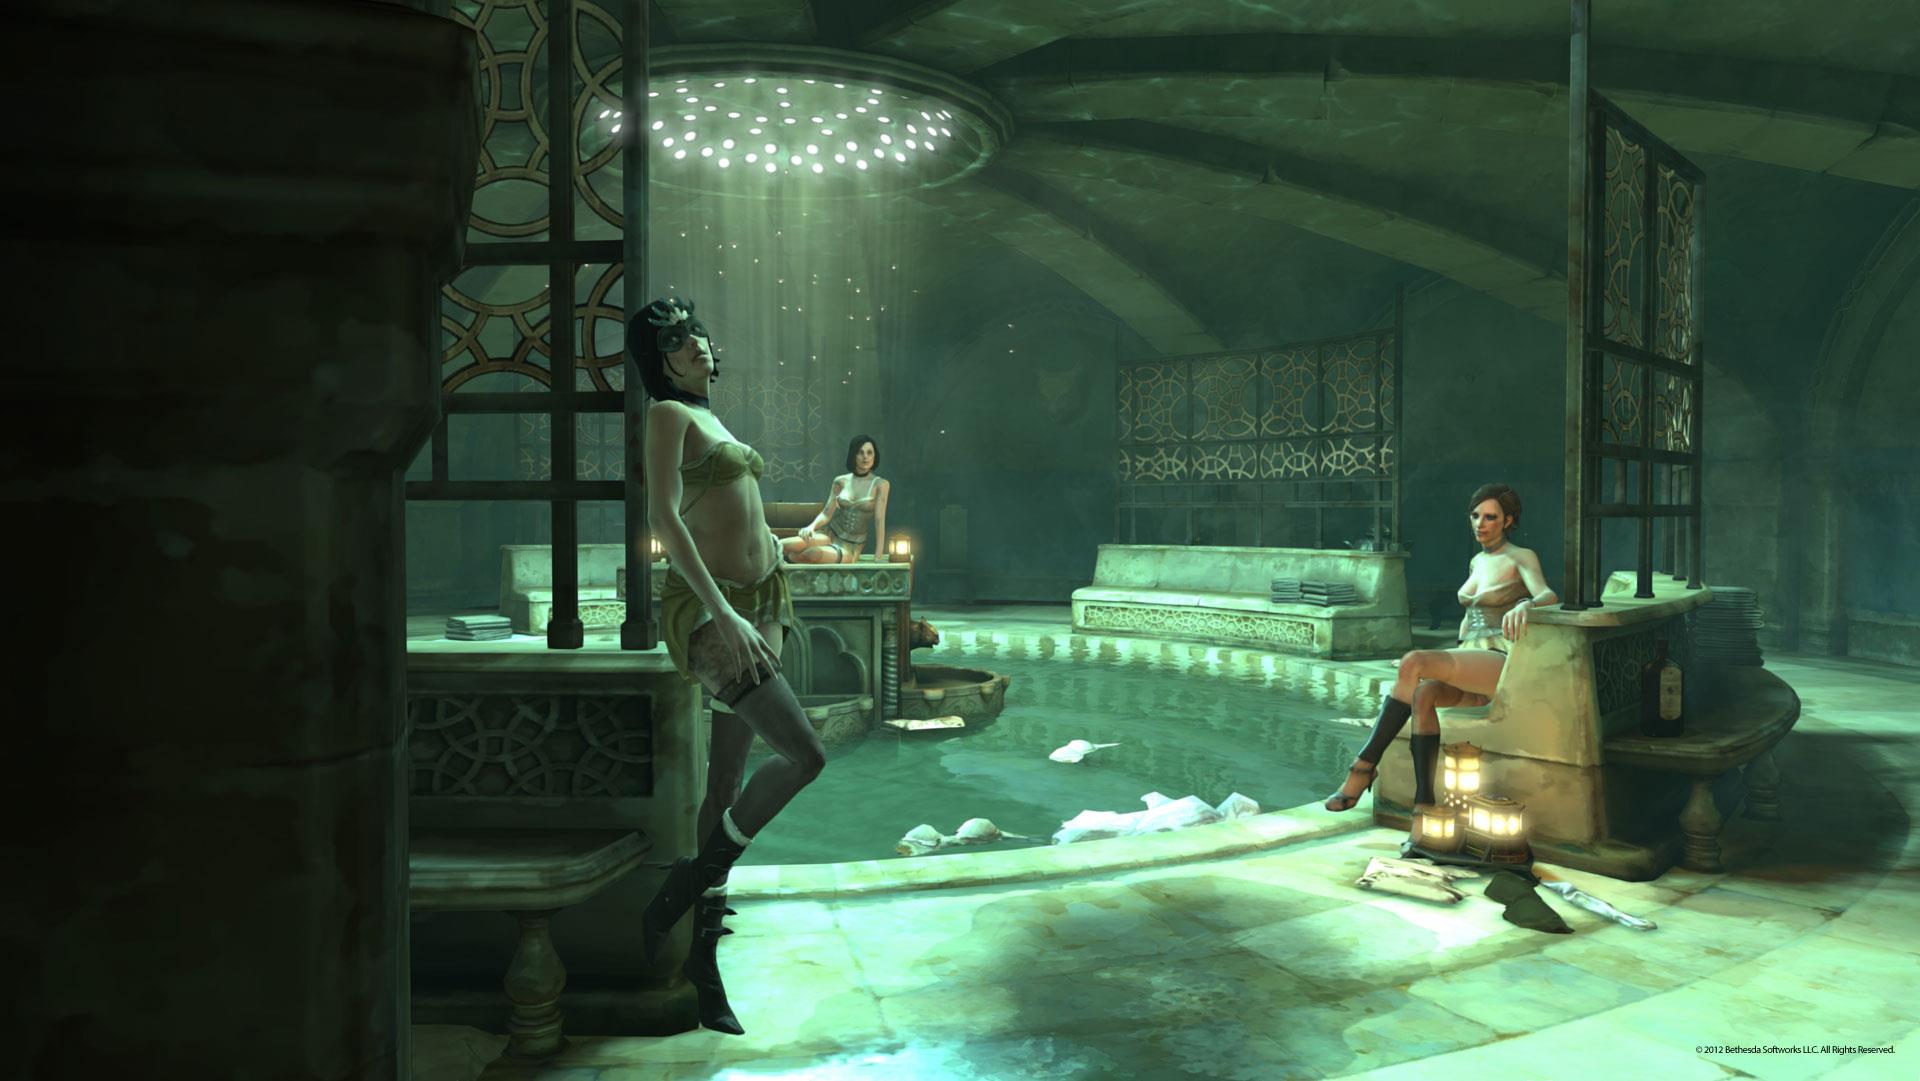 Immagine pubblicata in relazione al seguente contenuto: Arkane Studios mostra nuovi screenshot del game Dishonored | Nome immagine: news17137_6.jpg